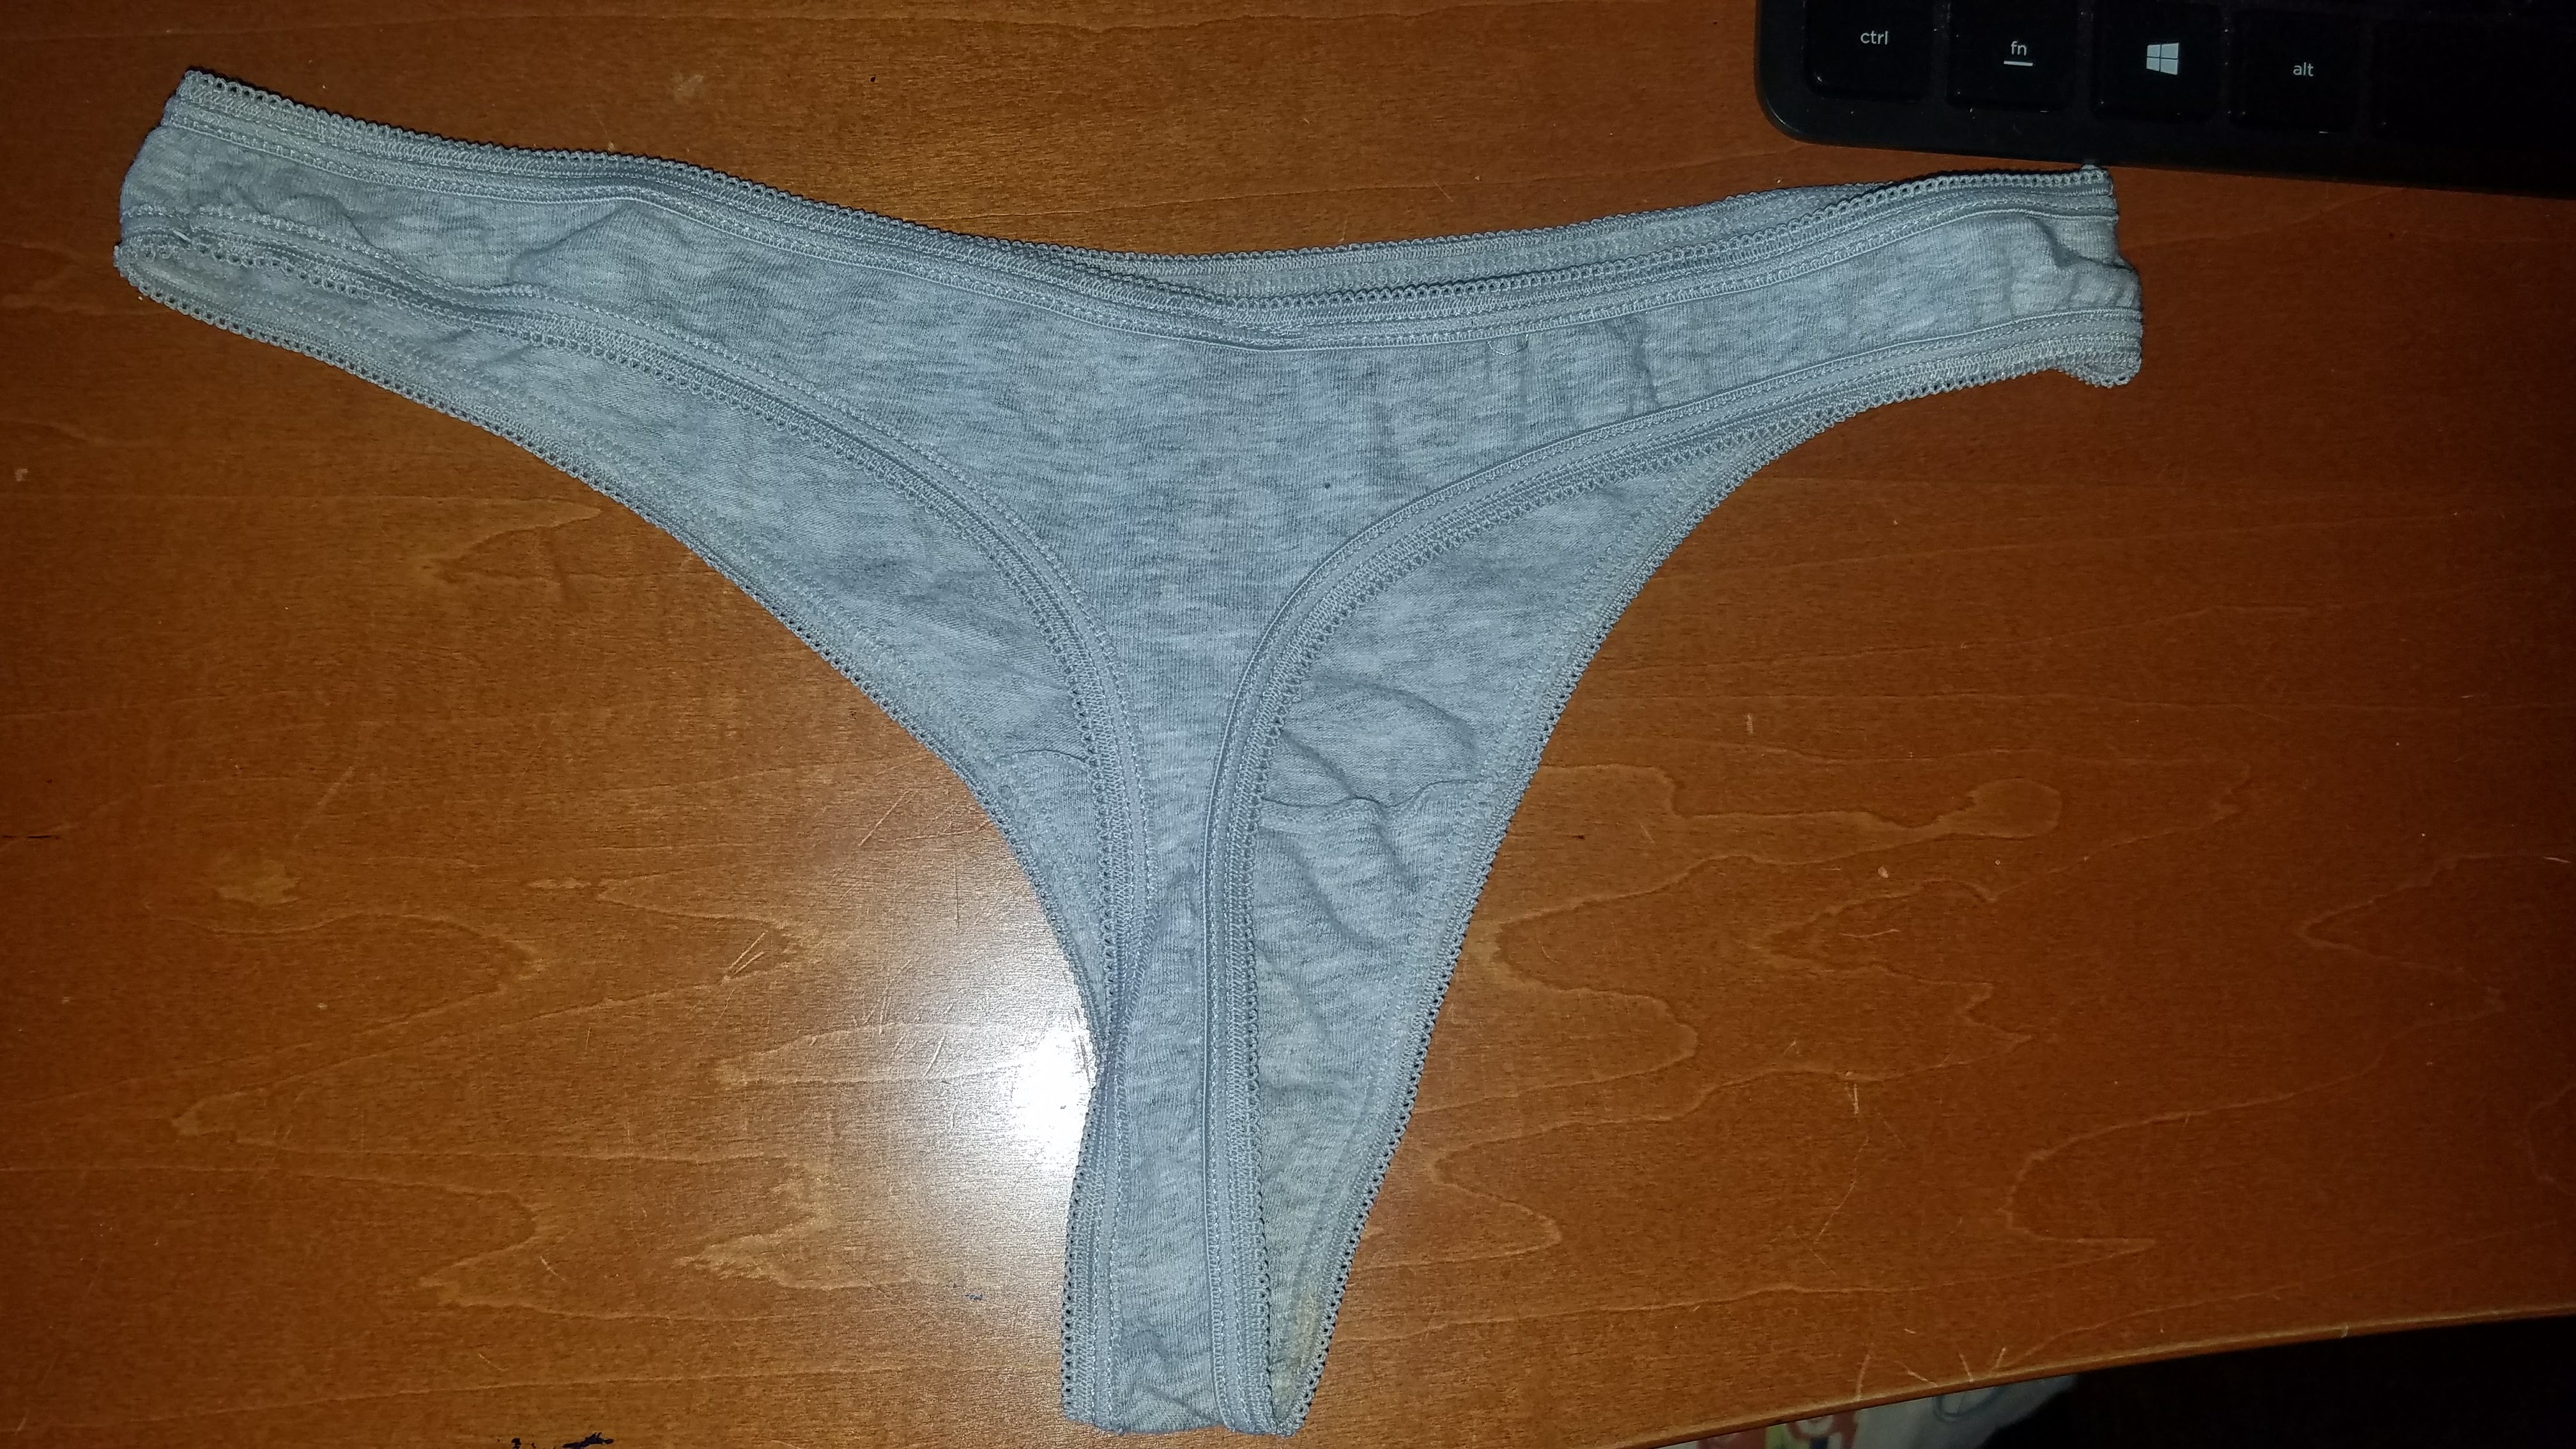 Panties After Sex Jpg